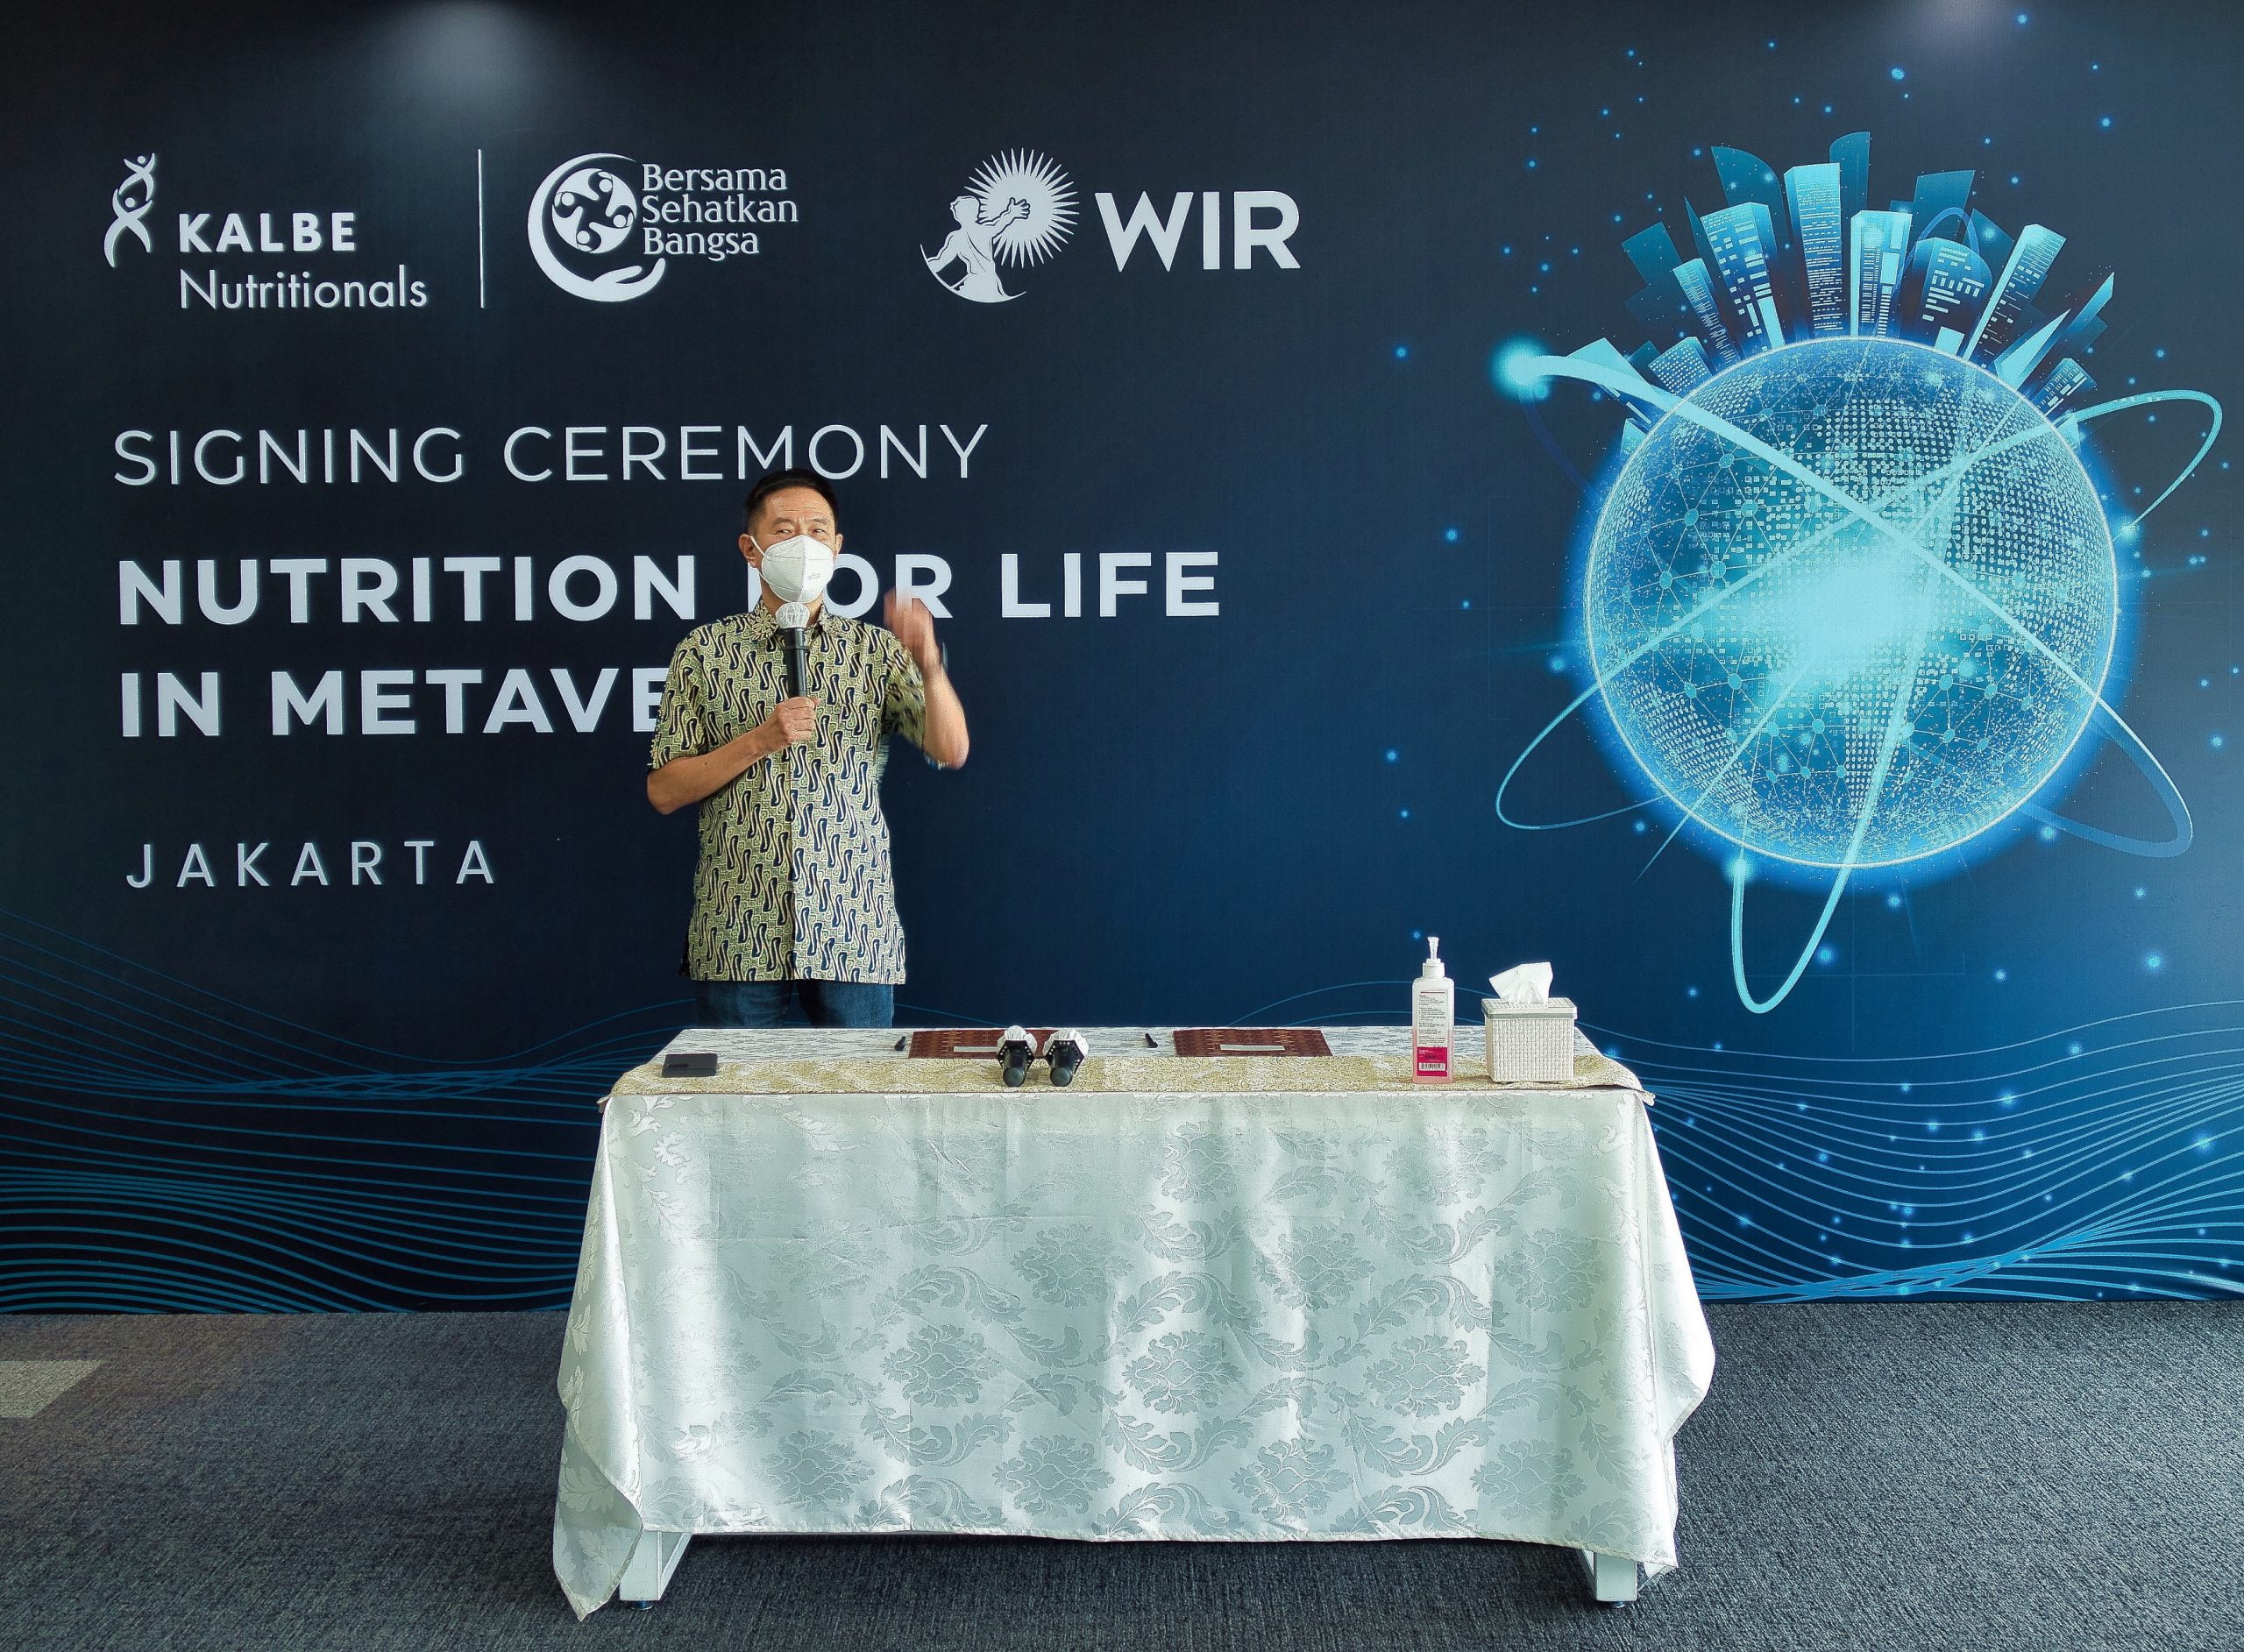 KALBE Nutritionals Gandeng WIR Group, Wujudkan Perusahaan Ke Dunia Metaverse